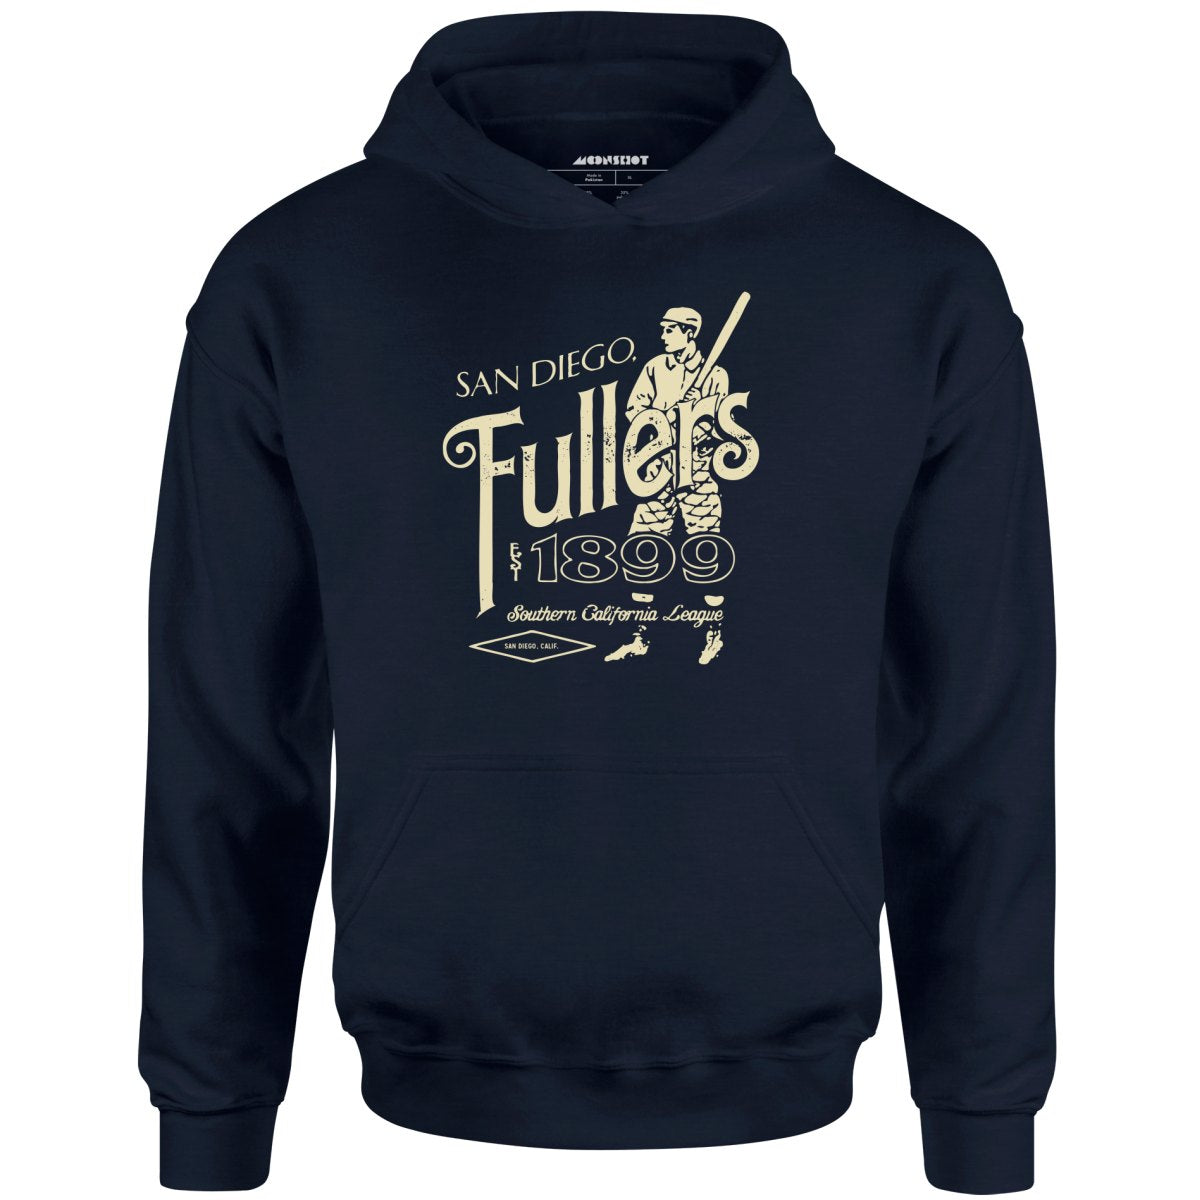 San Diego Fullers - California - Vintage Defunct Baseball Teams - Unisex Hoodie